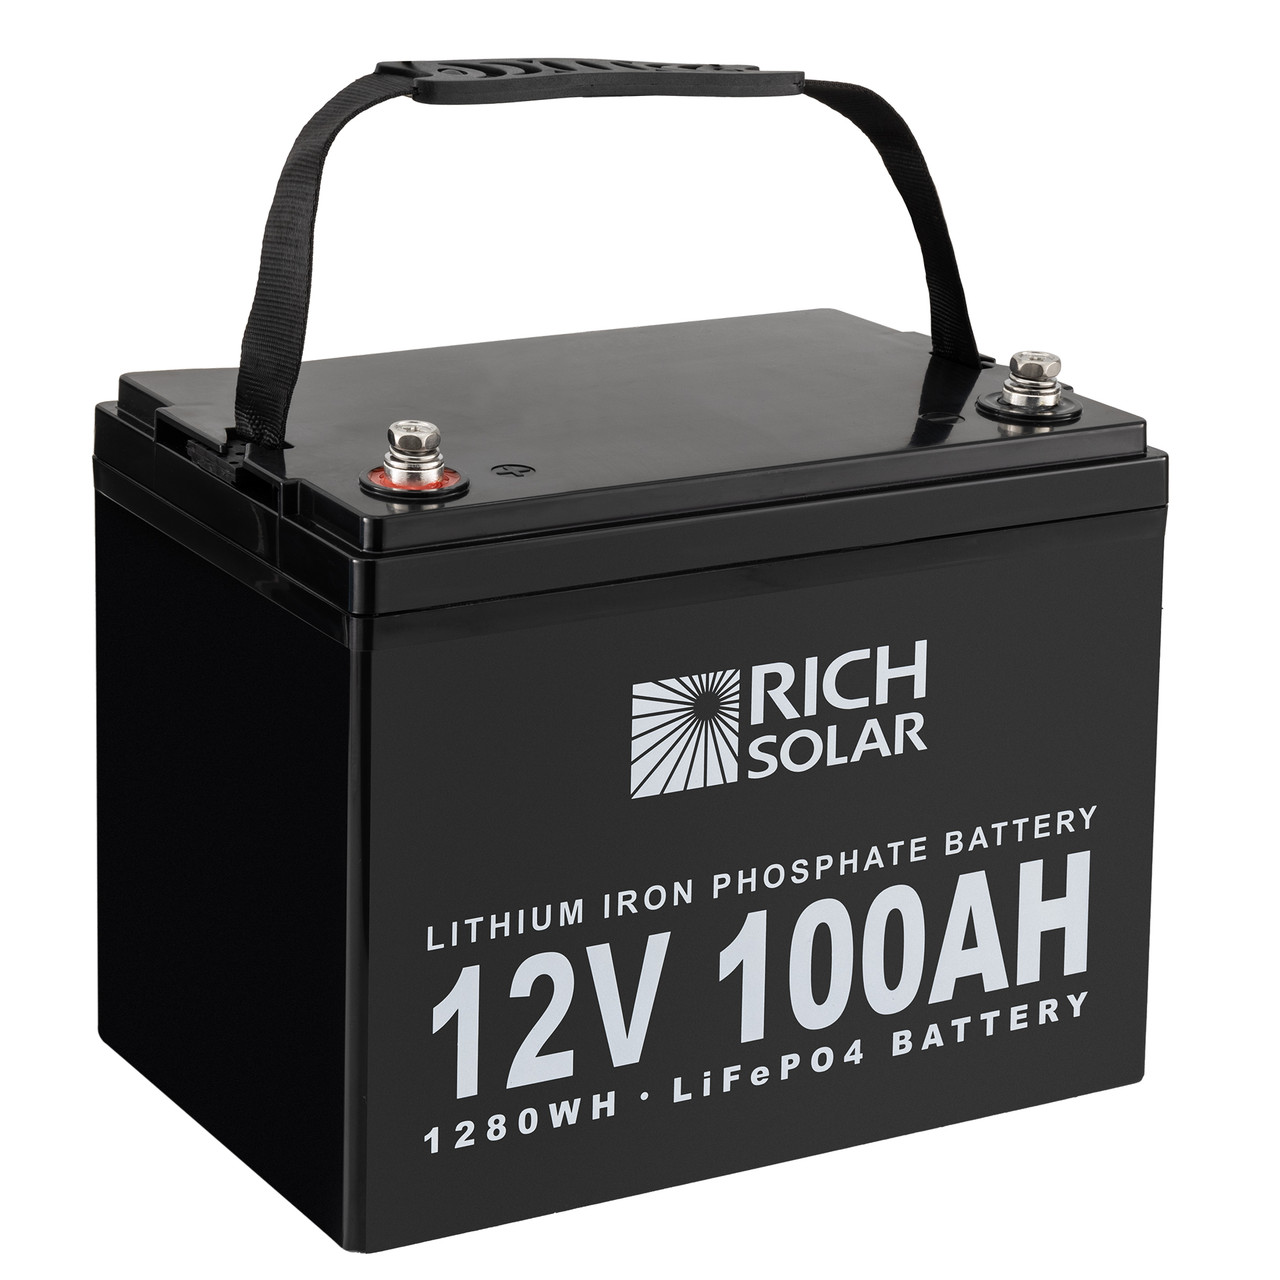 Bateria De Litio 12v 100ah Solar Lifepo4 Bluetooth Rioberg